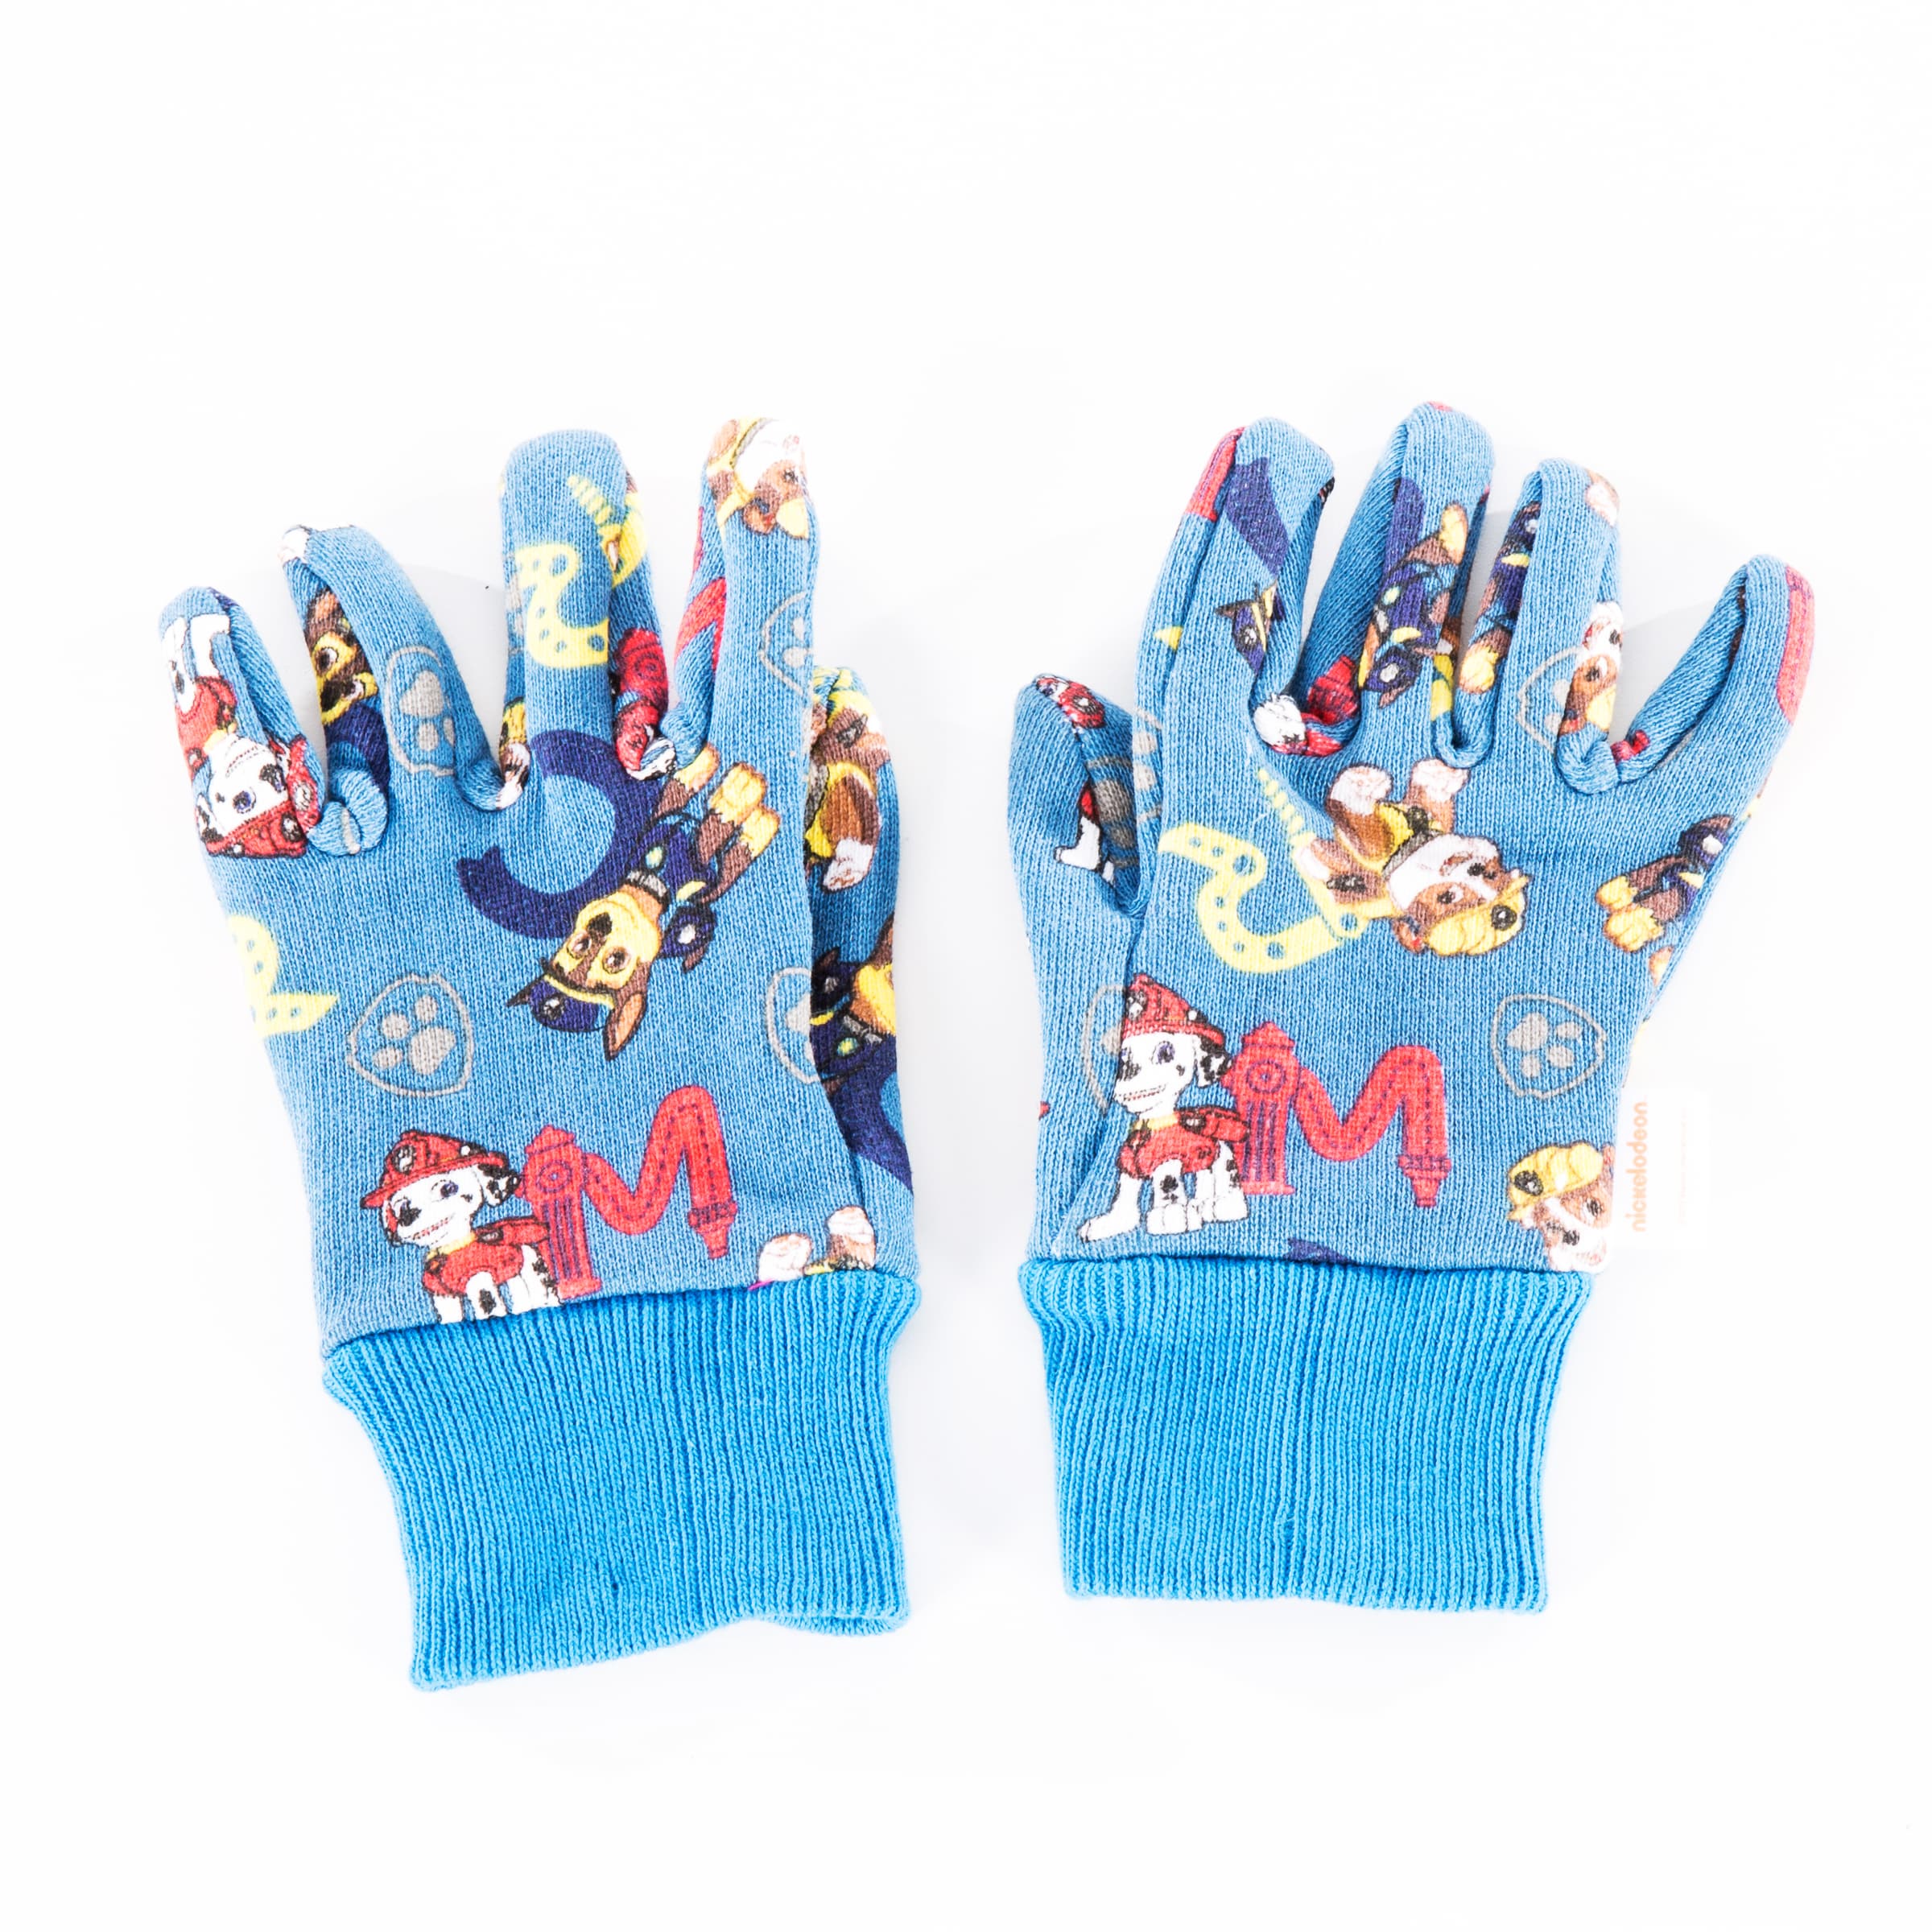 Wonder Grip Nicely Nimble Garden Gloves for Kids